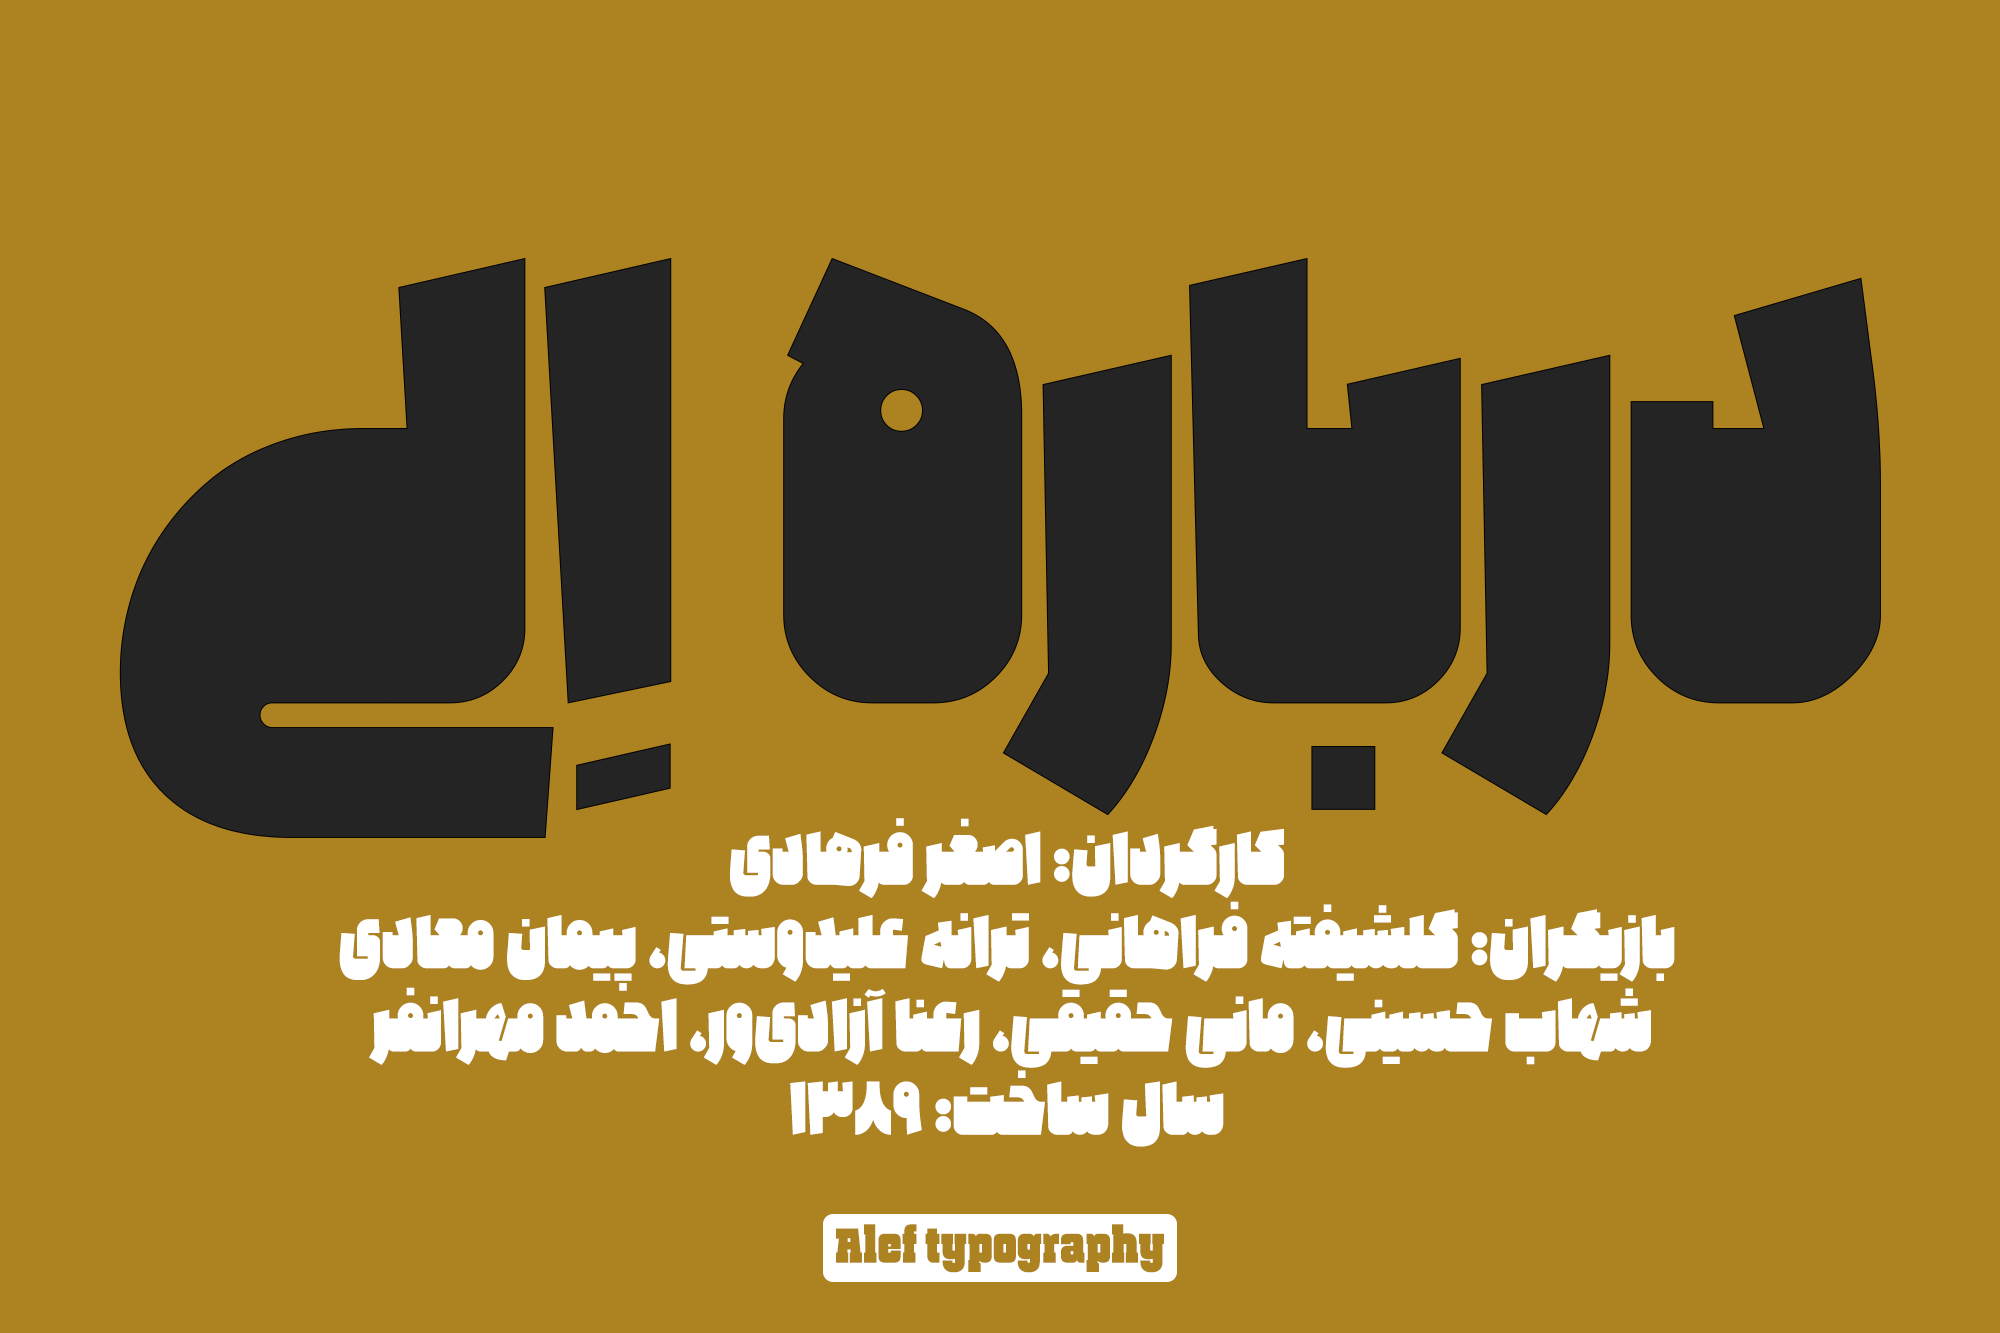 Alef-typography07